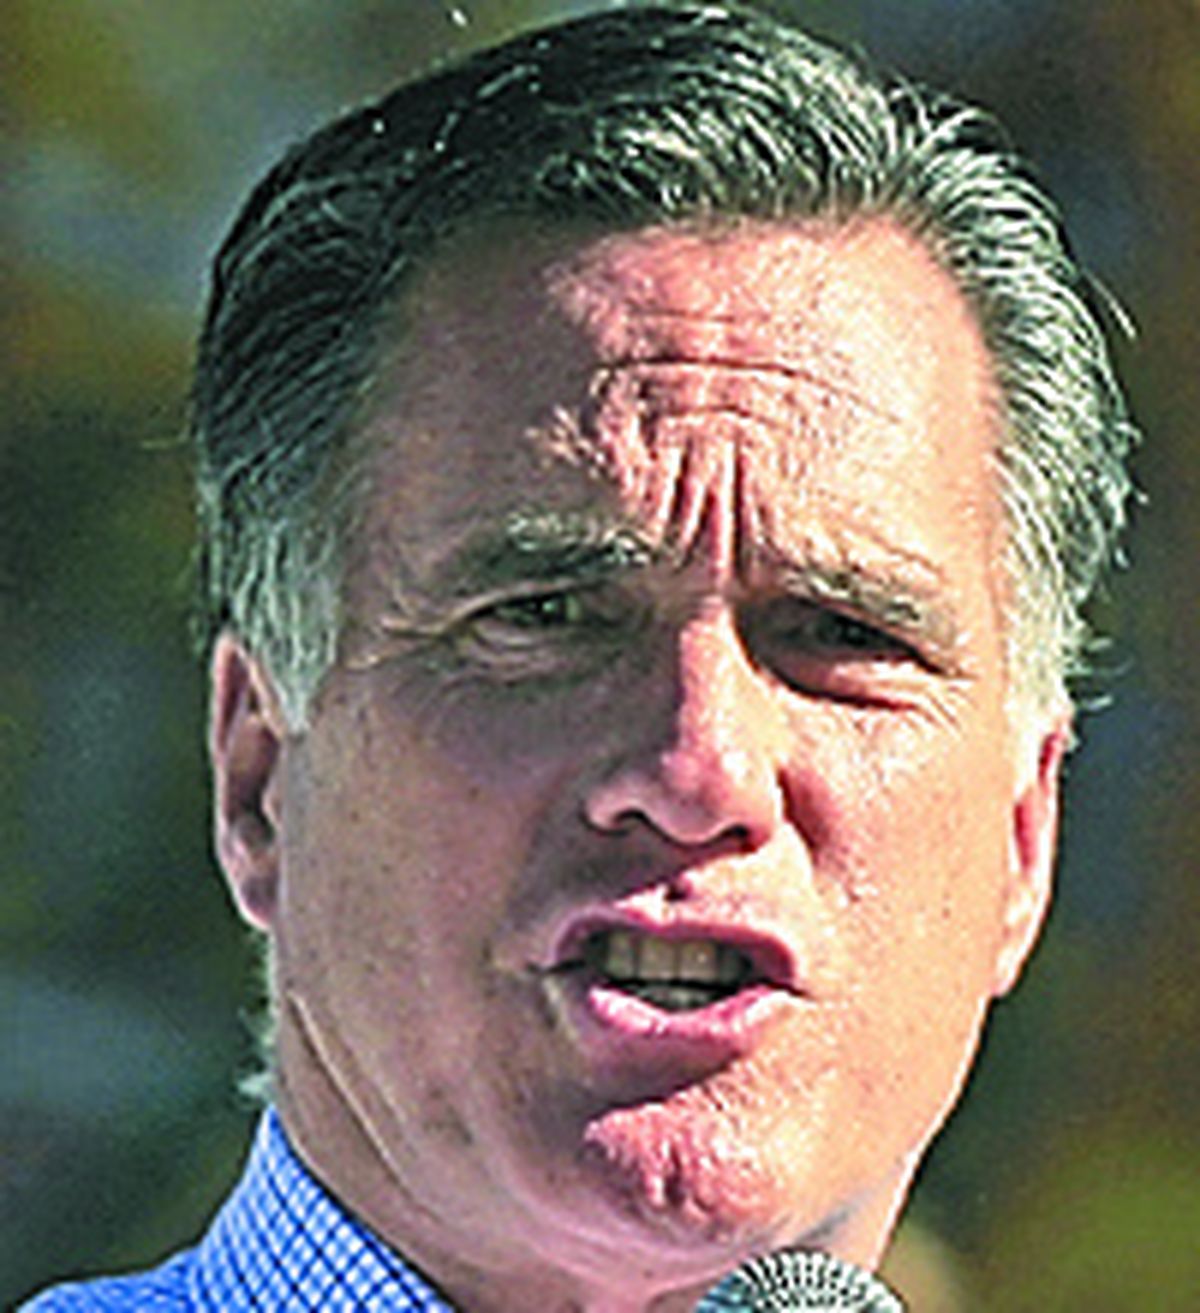 Romney 47%